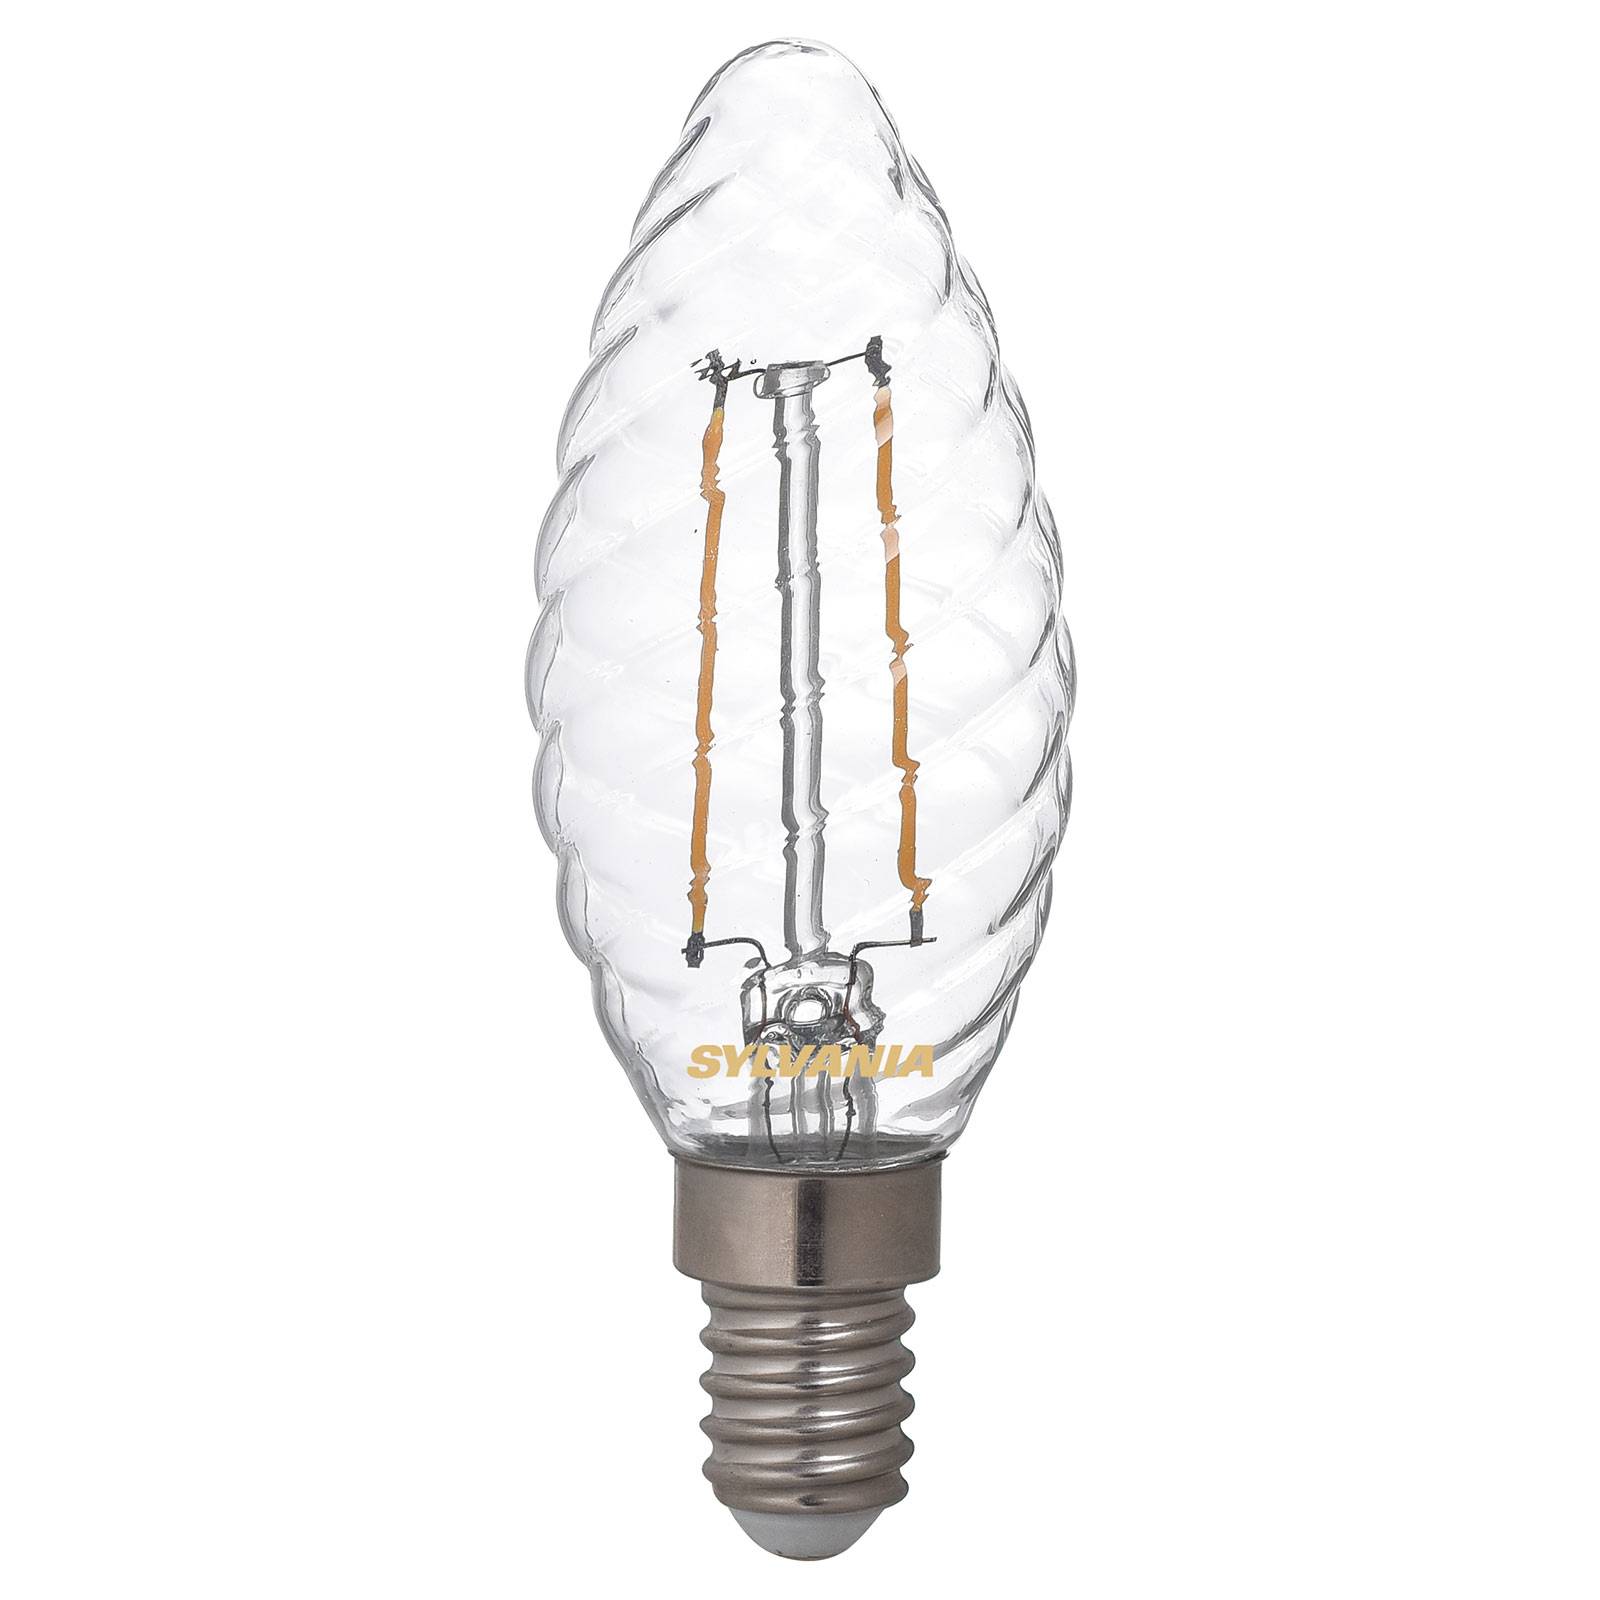 LED-Kerzenlampe E14 ToLEDo 2,5W 827 klar, gedreht von Sylvania